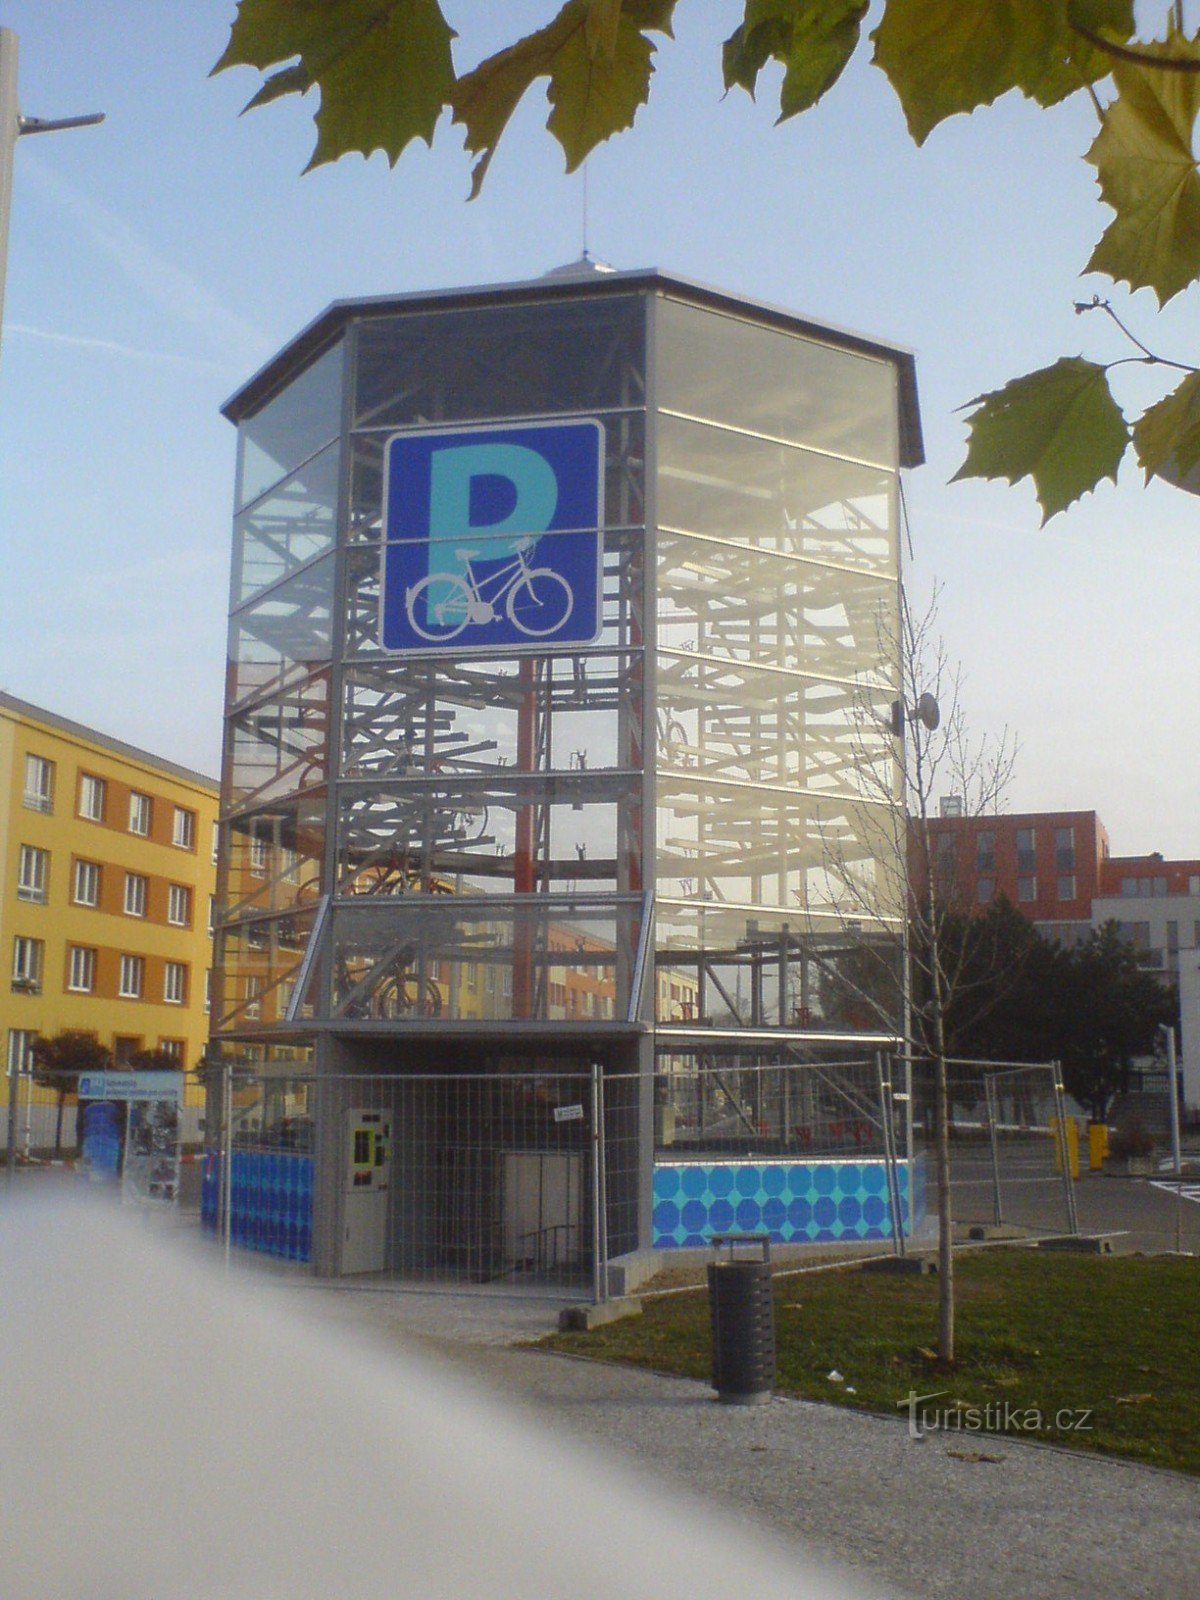 Parkeerhuis voor fietsen in aanbouw